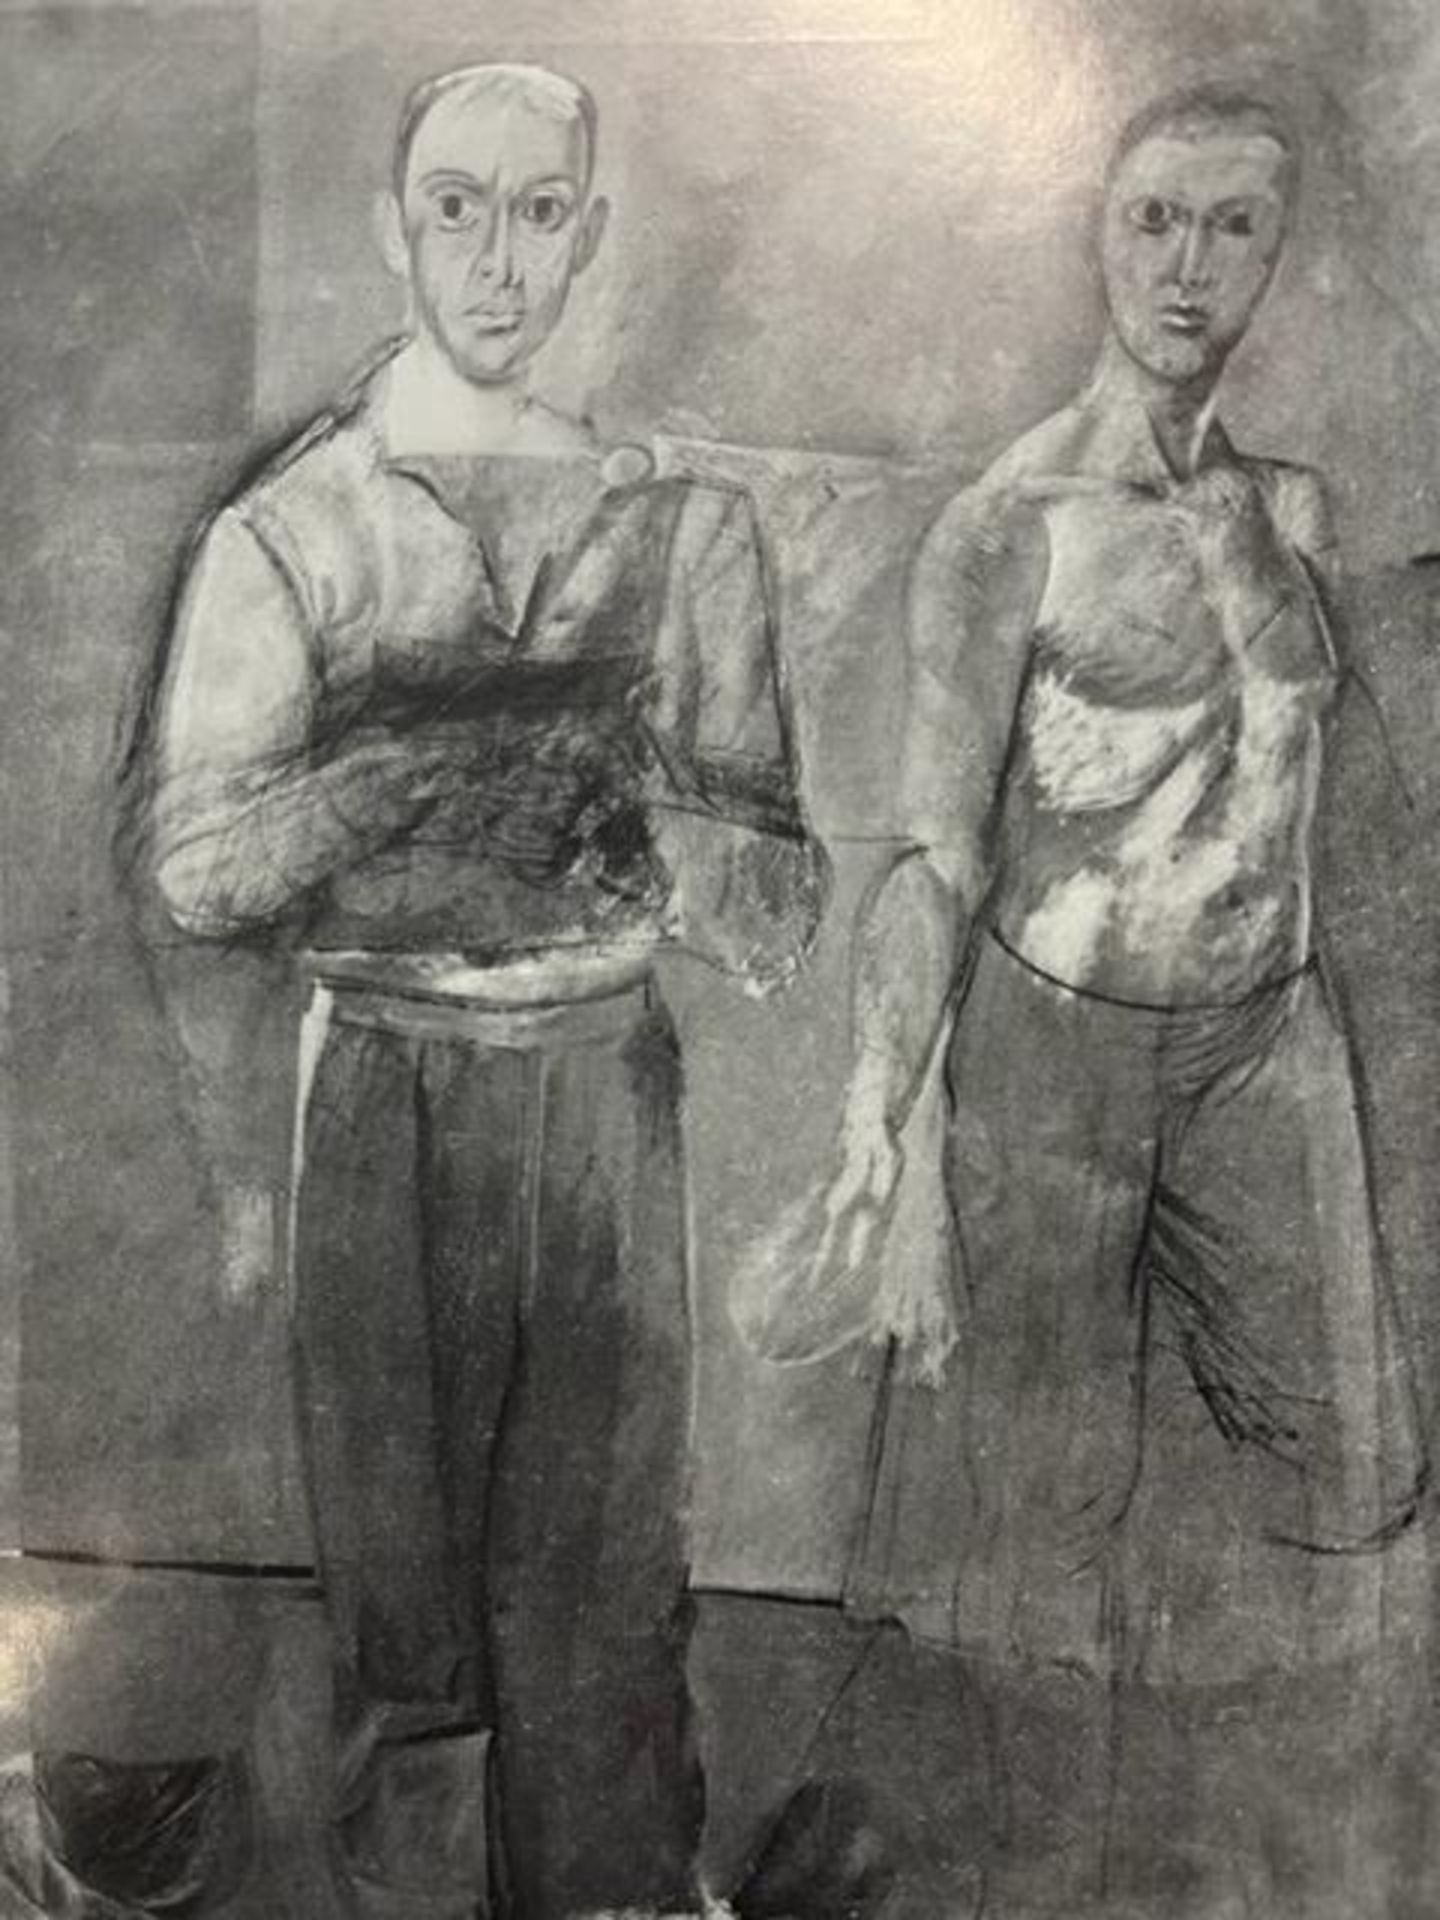 Willem de Kooning "Two Men Standing" Print. - Image 2 of 6